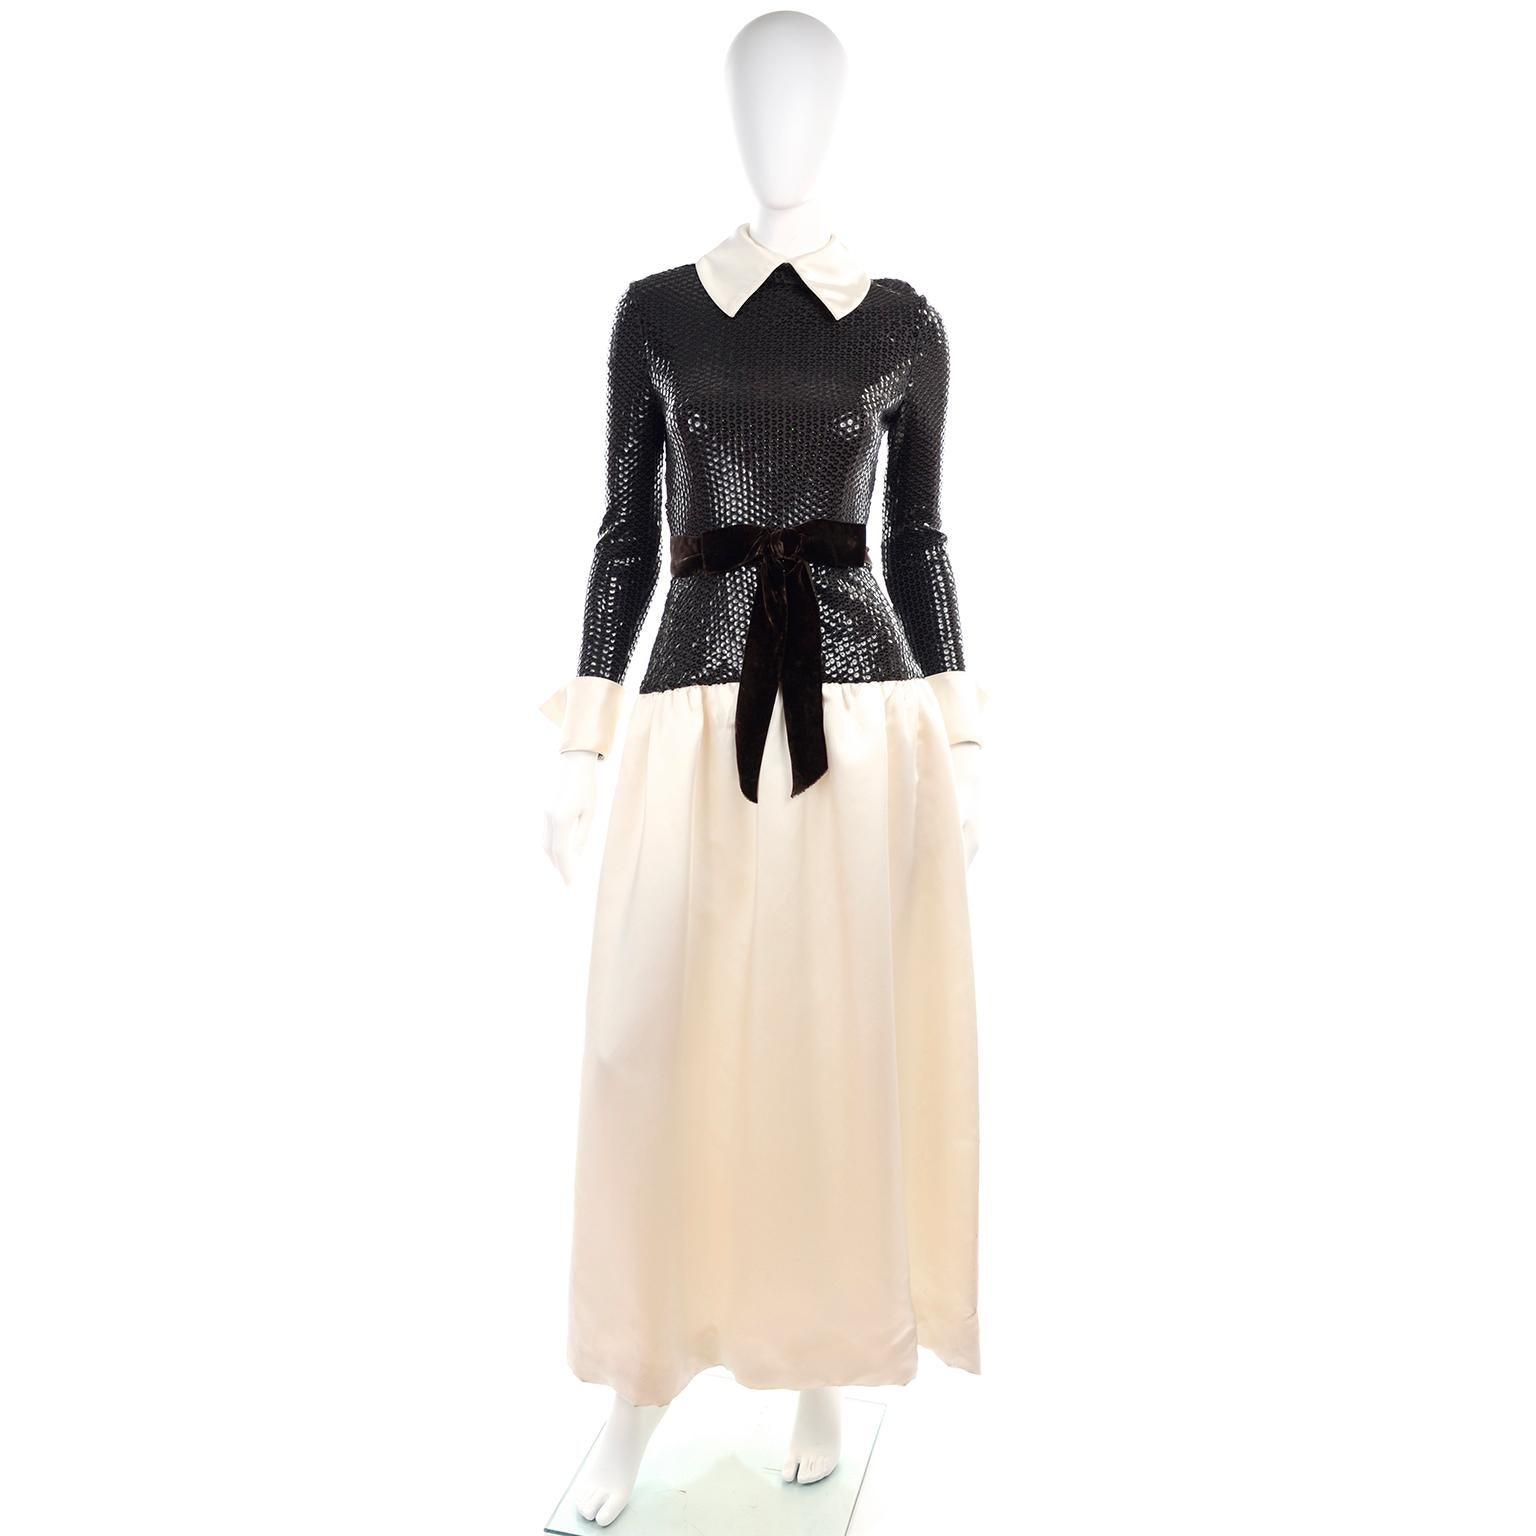 Il s'agit d'une belle robe vintage conçue par Kiki Hart à la fin des années 1960 ou au début des années 1970.  La robe a un corsage à paillettes marron/noir et une longue jupe, des manches et un col en satin ivoire.  .La robe est dotée d'une